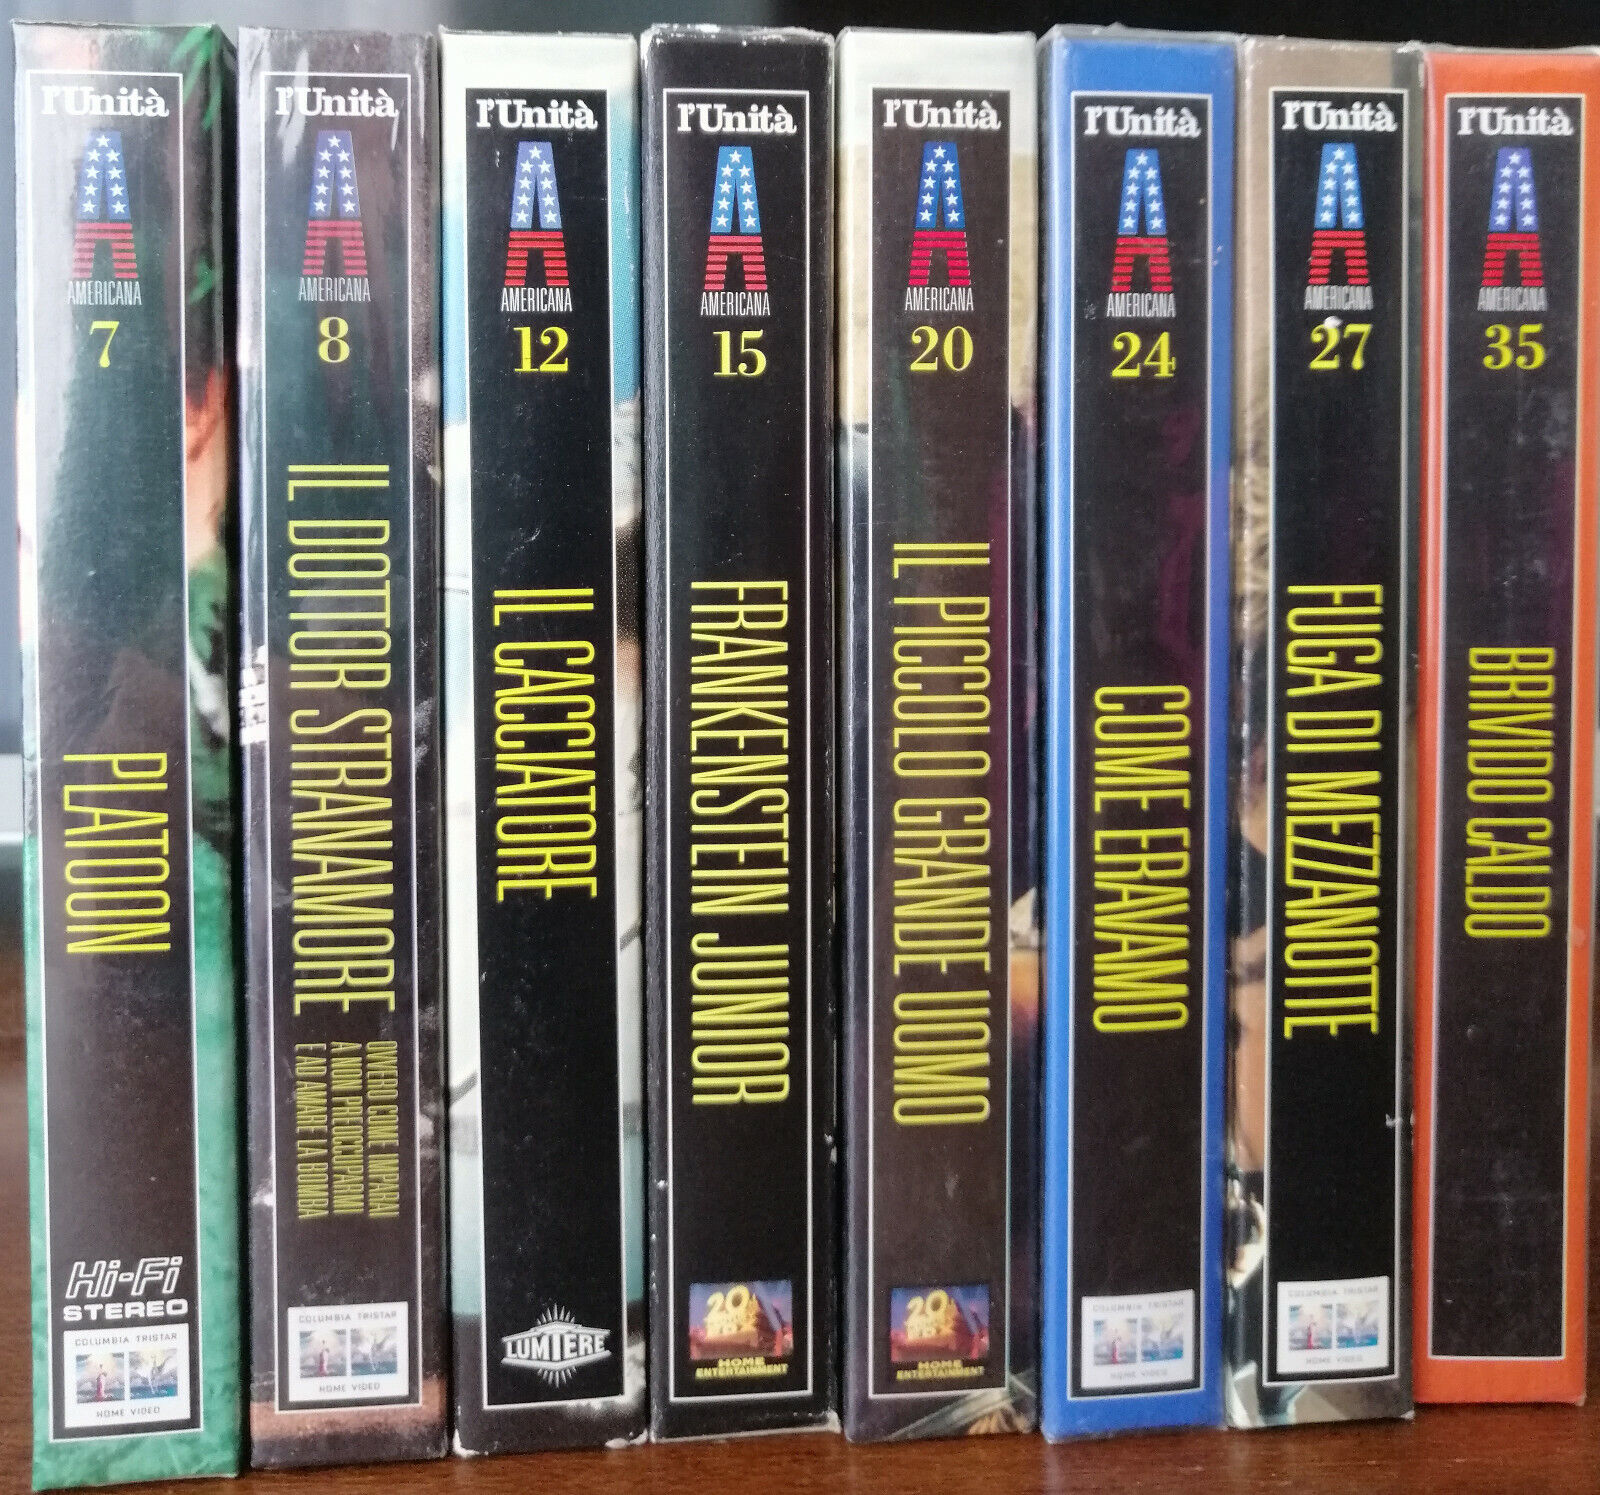 L'unit? Vhs vol. 7,8,12,15,20,24,27,35 - 1996 -  VHS - A